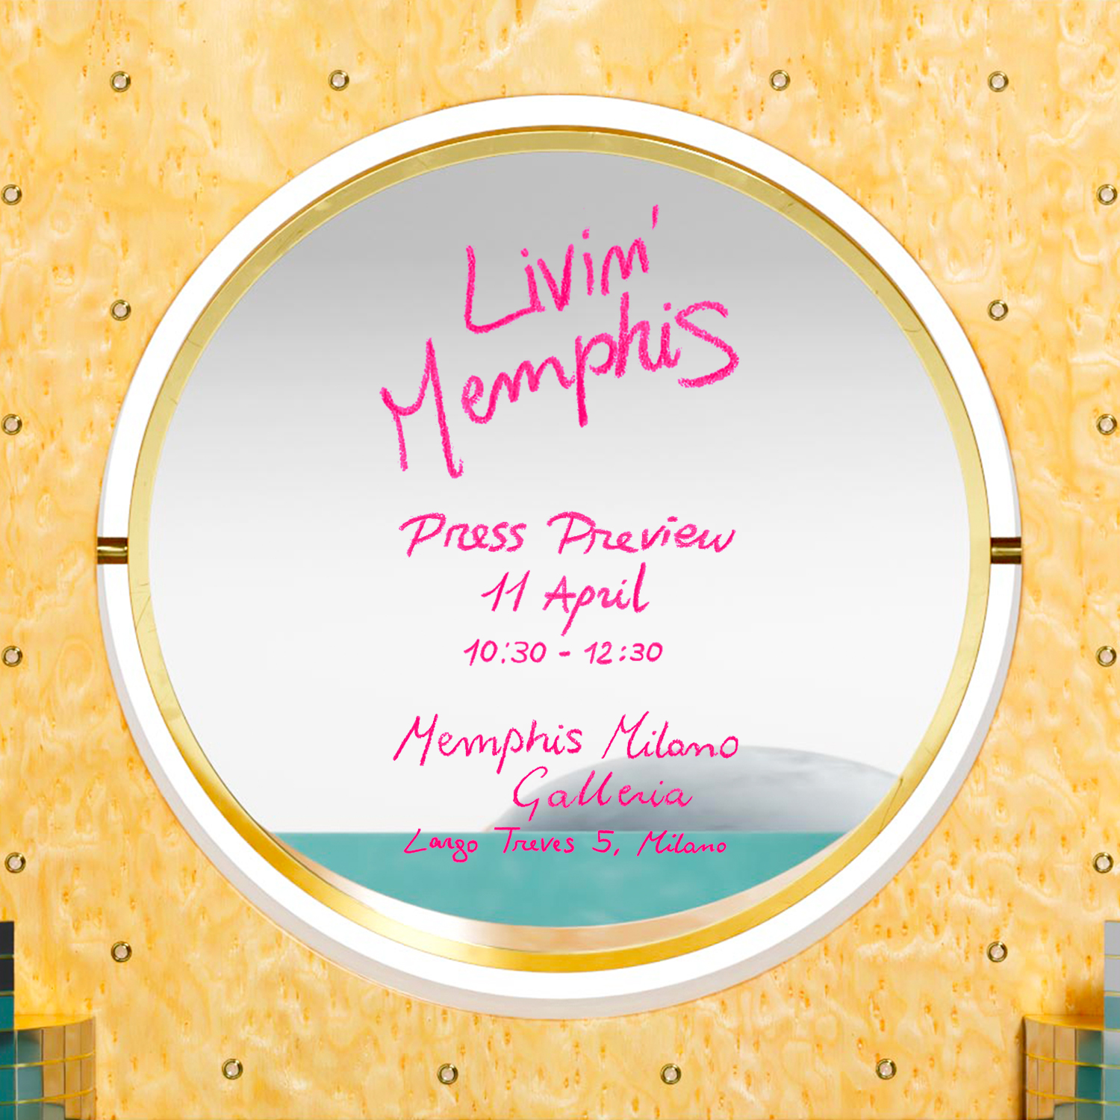 Memphis-SdM-LivinMemphis-PressPreview-STD.jpg